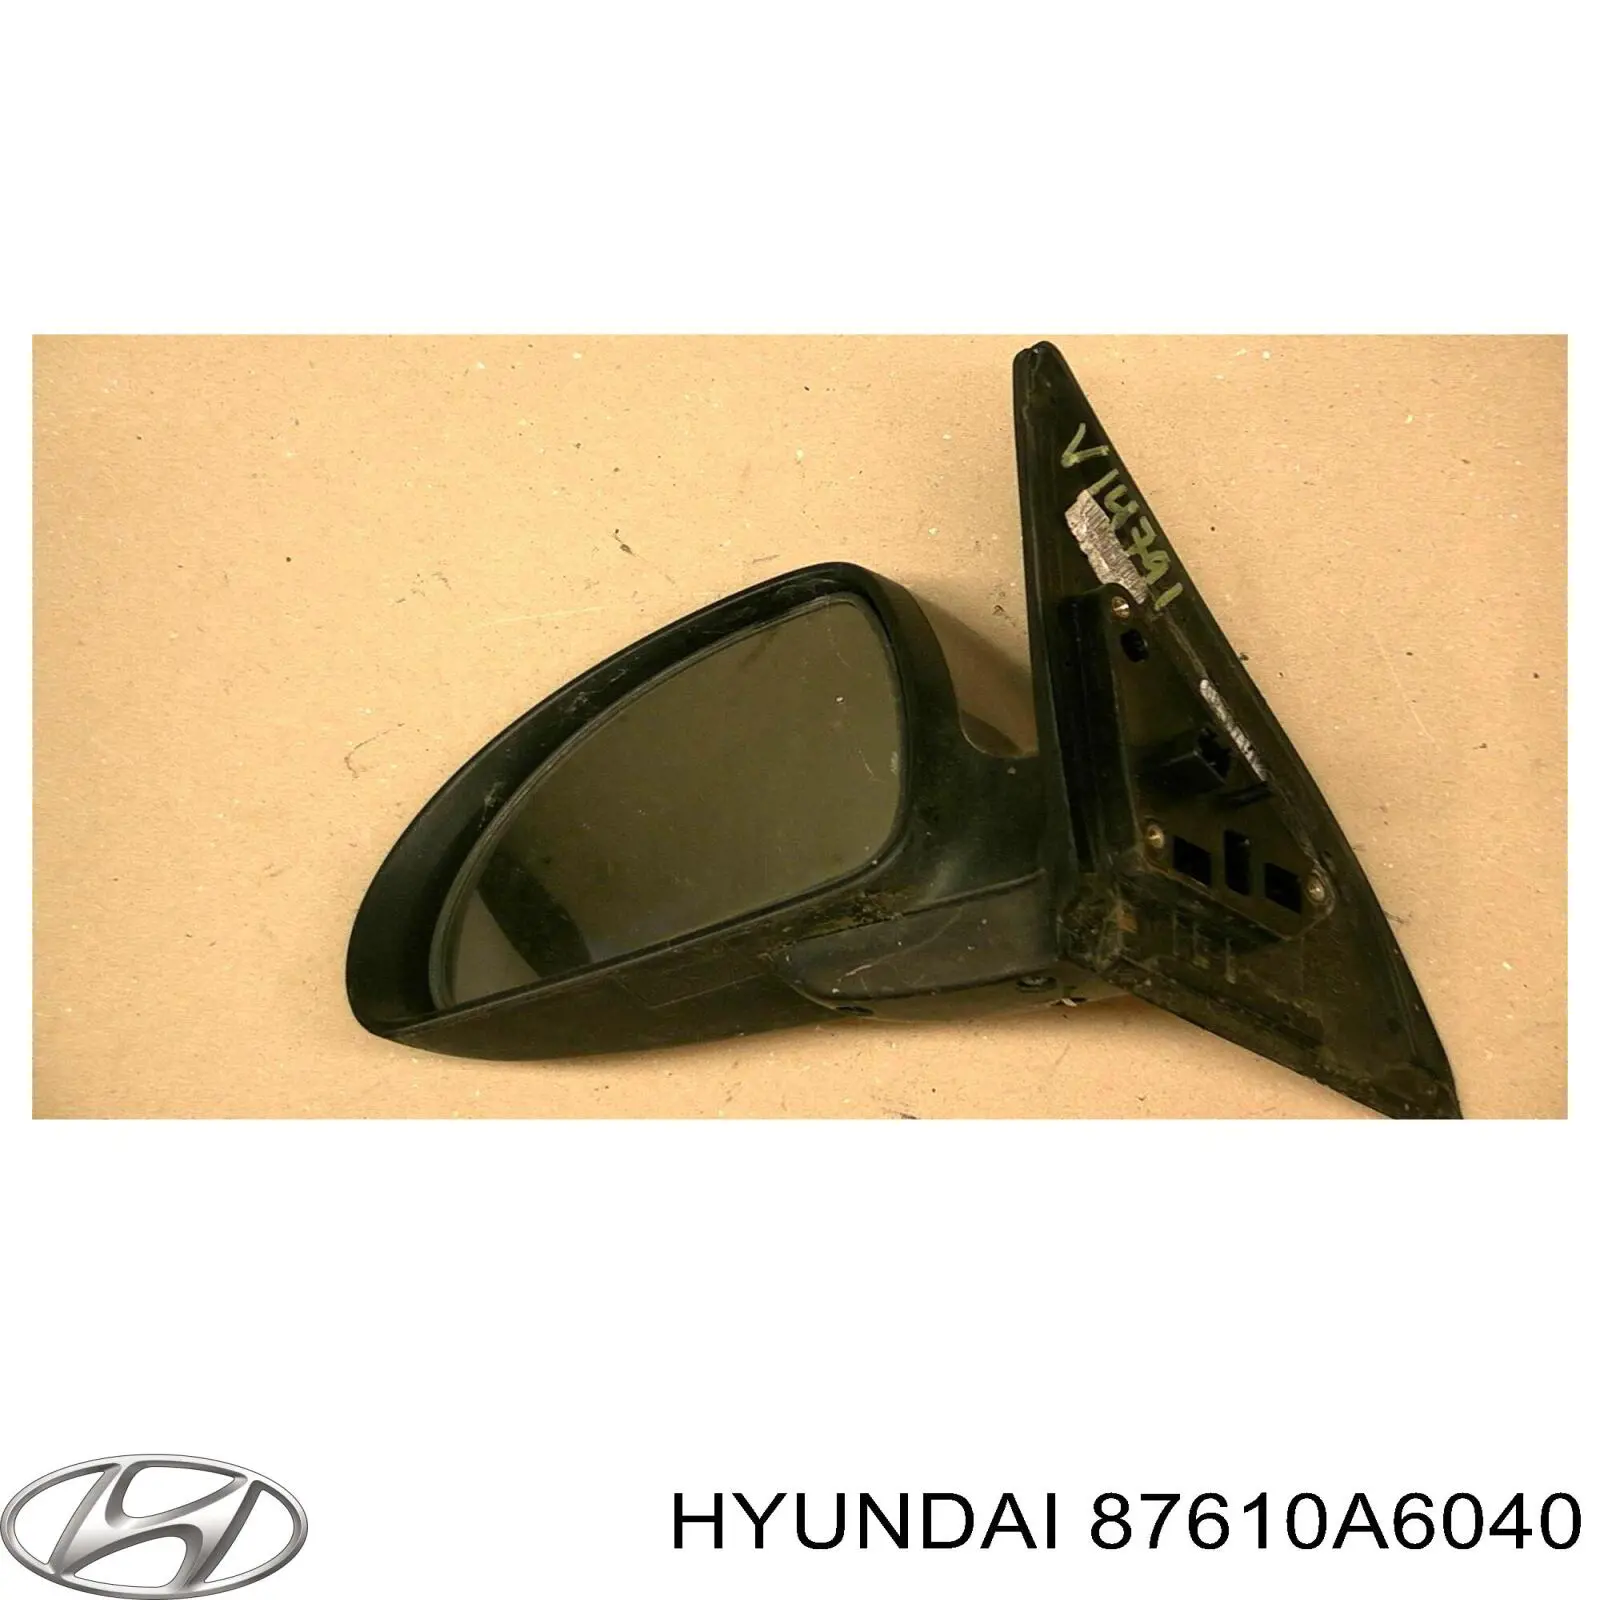 87610A6040 Hyundai/Kia espejo retrovisor izquierdo